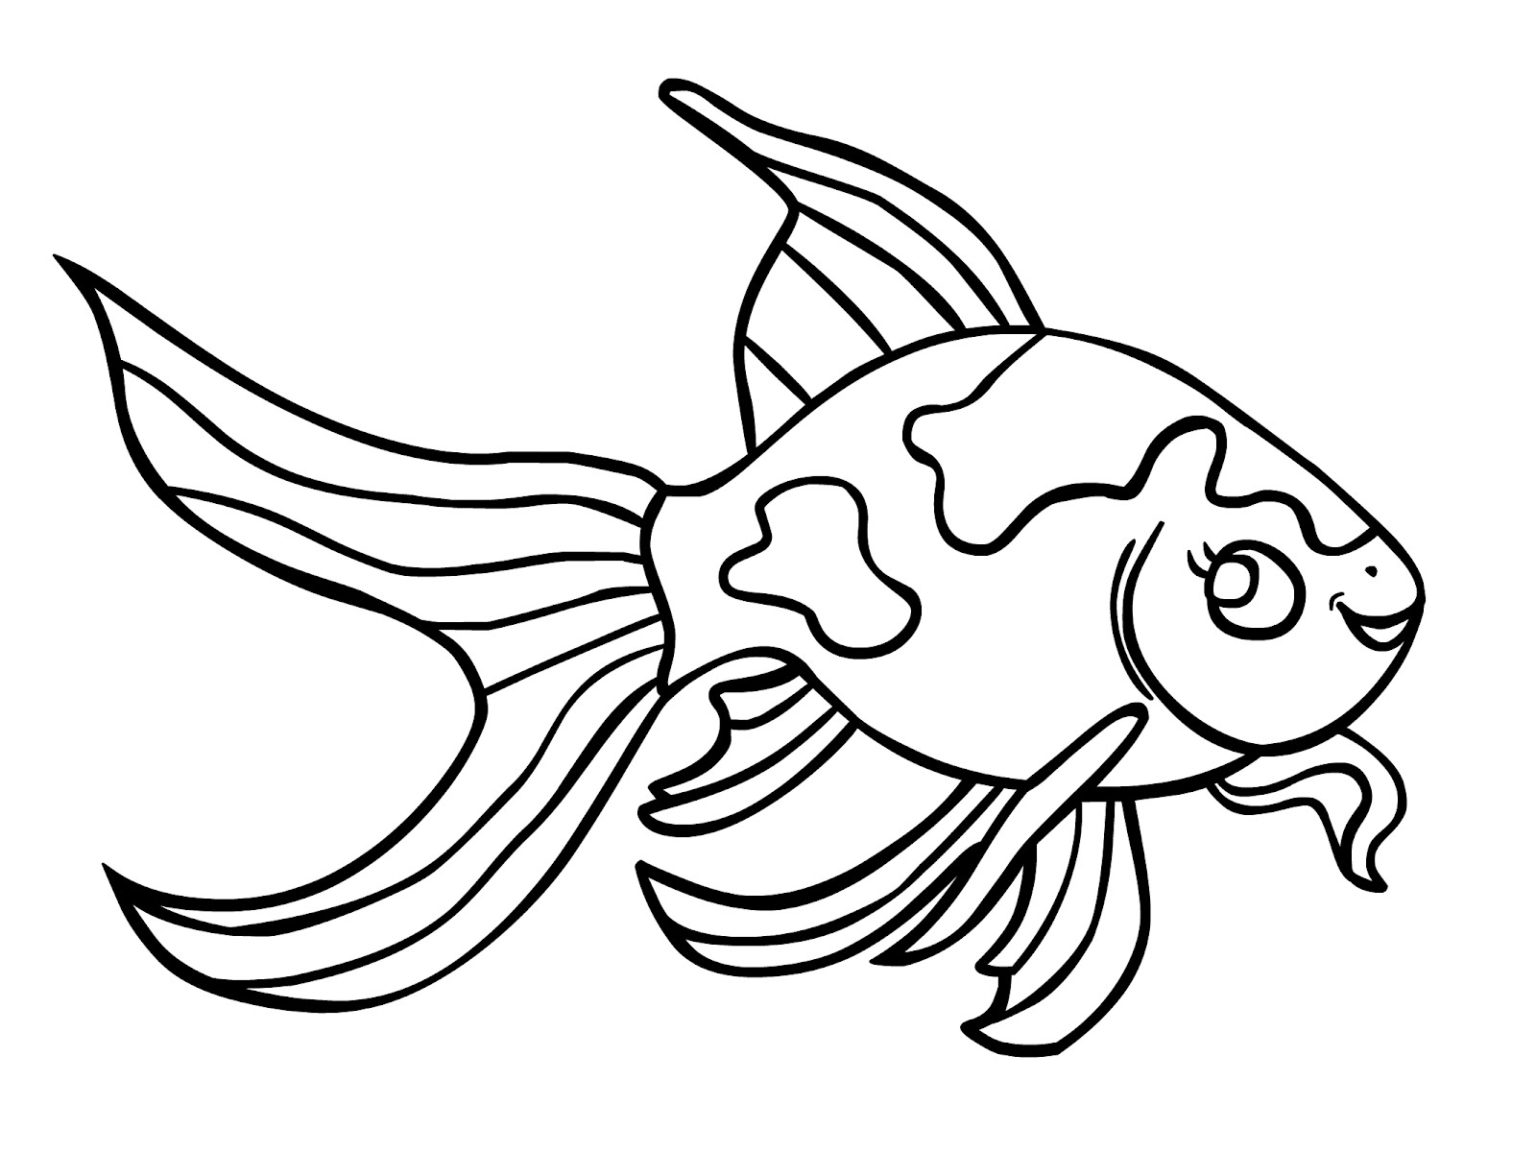 Xem hơn 100 ảnh về hình vẽ cá vàng - daotaonec